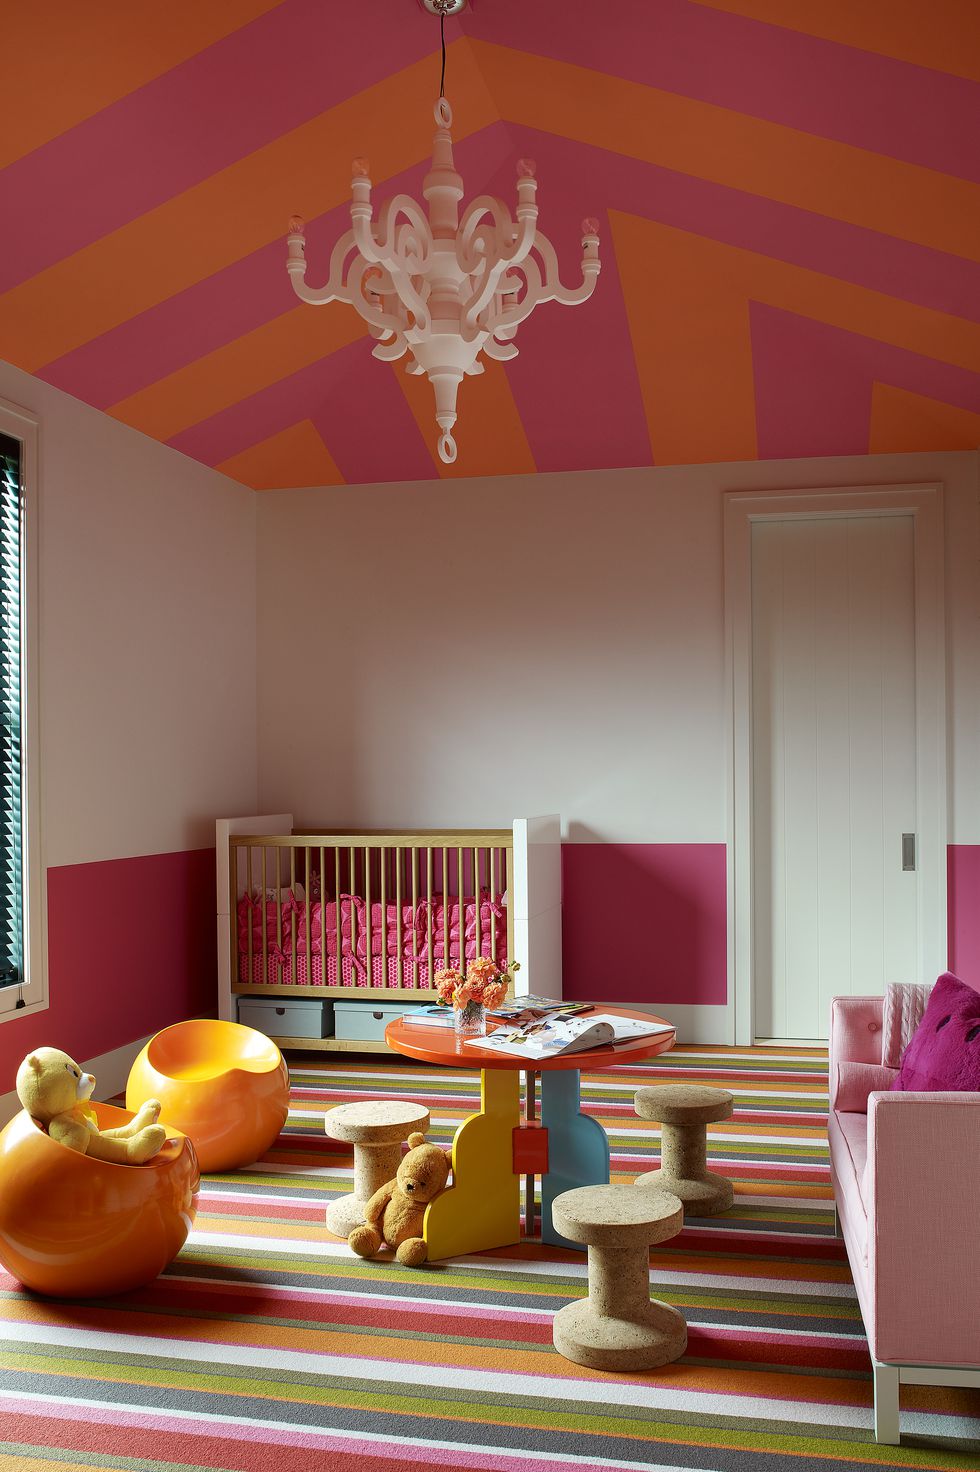 Camera bebelus in culori calde